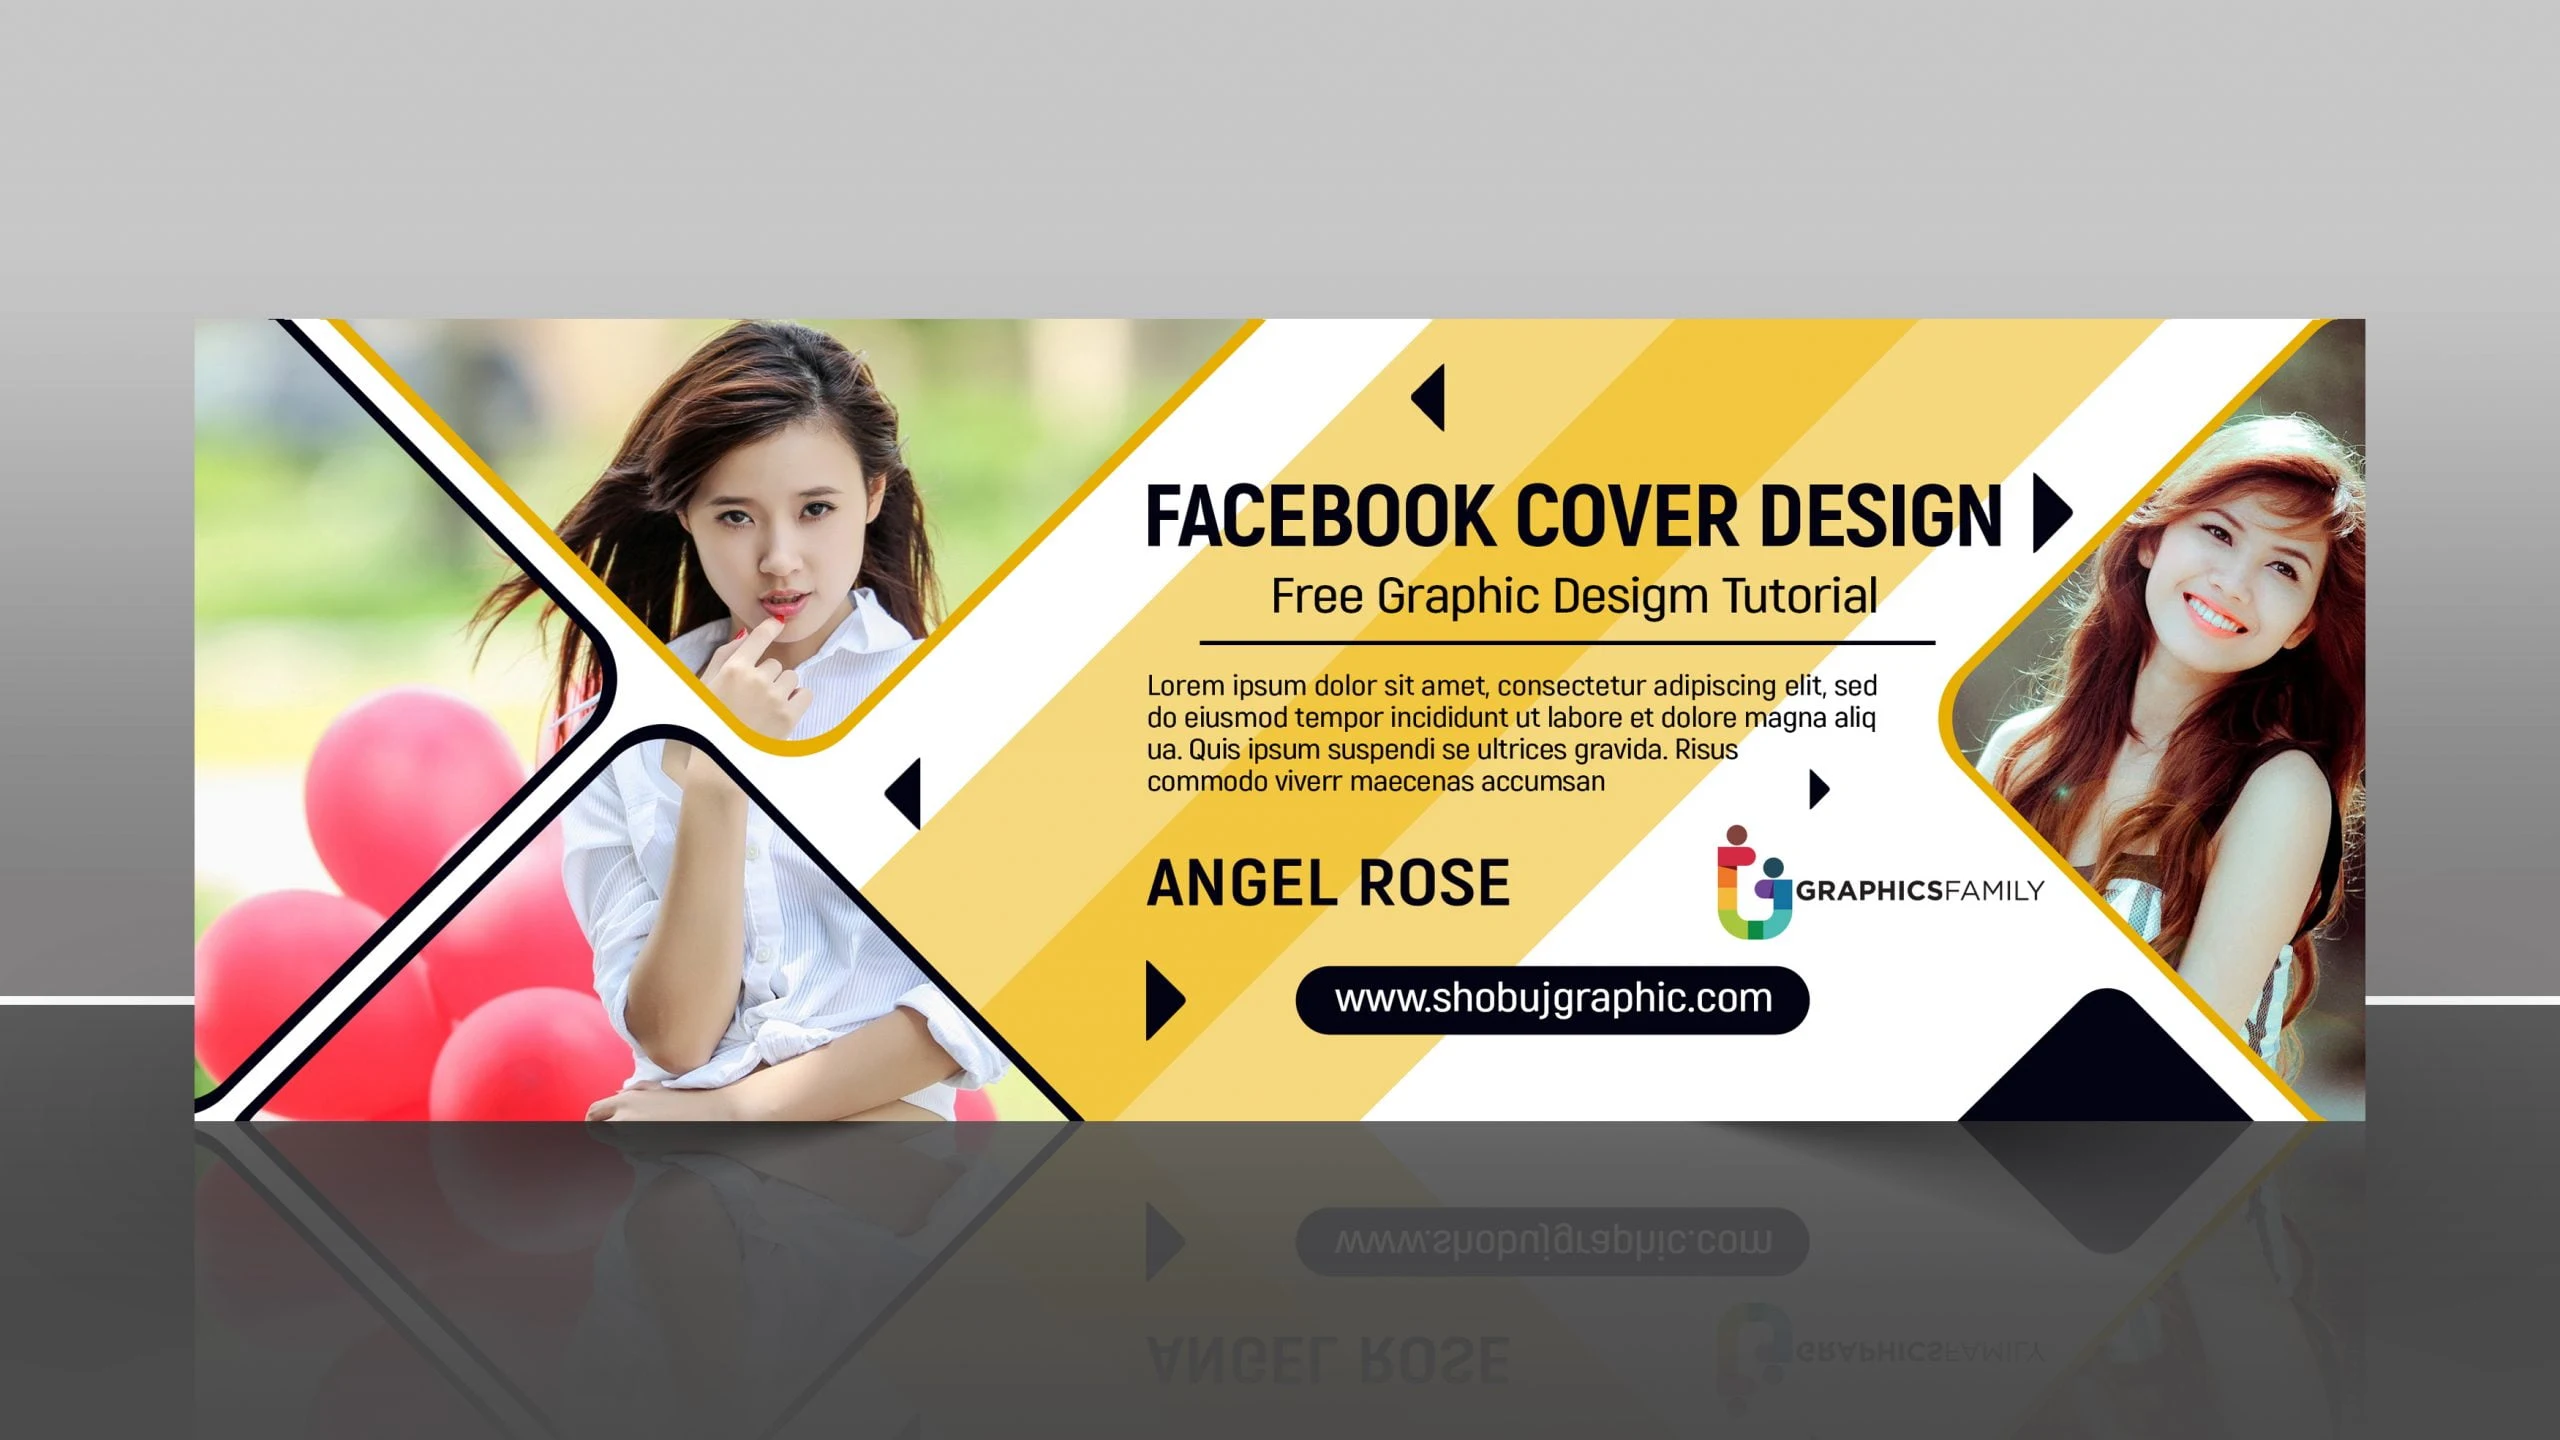 Facebook Cover Photo Design - Facebook Cover Photo Download Stylish VIP Facebook Cover Photo Design - vip facebook cover photo - NeotericIT.com - Image no 8